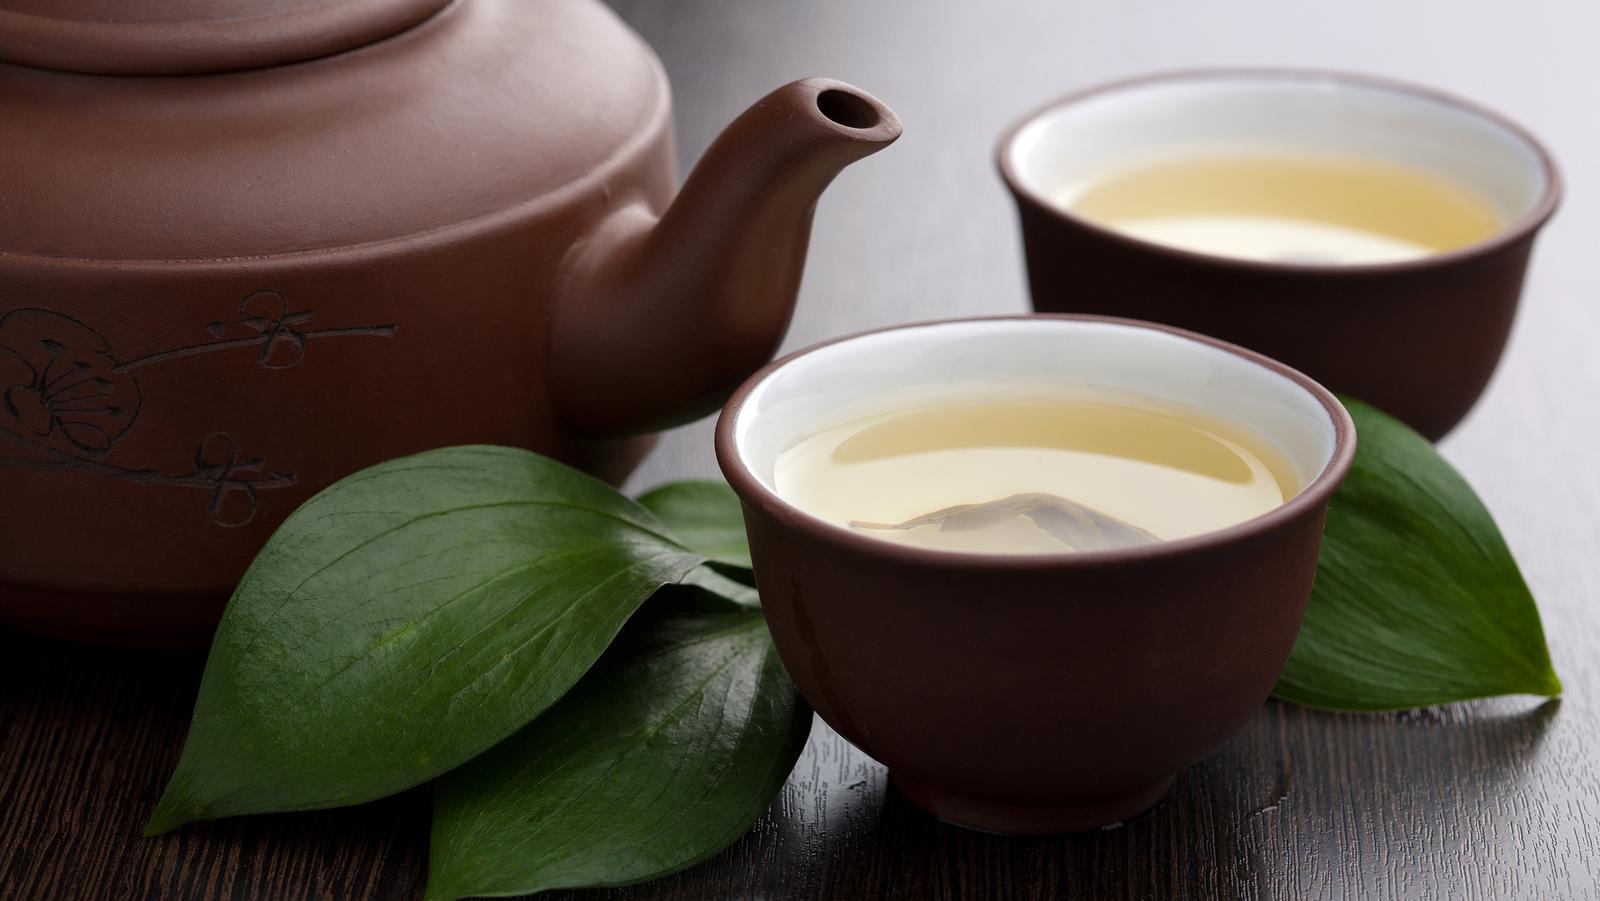 Liečivé účinky zeleného čaju: pomáhajú antioxidanty